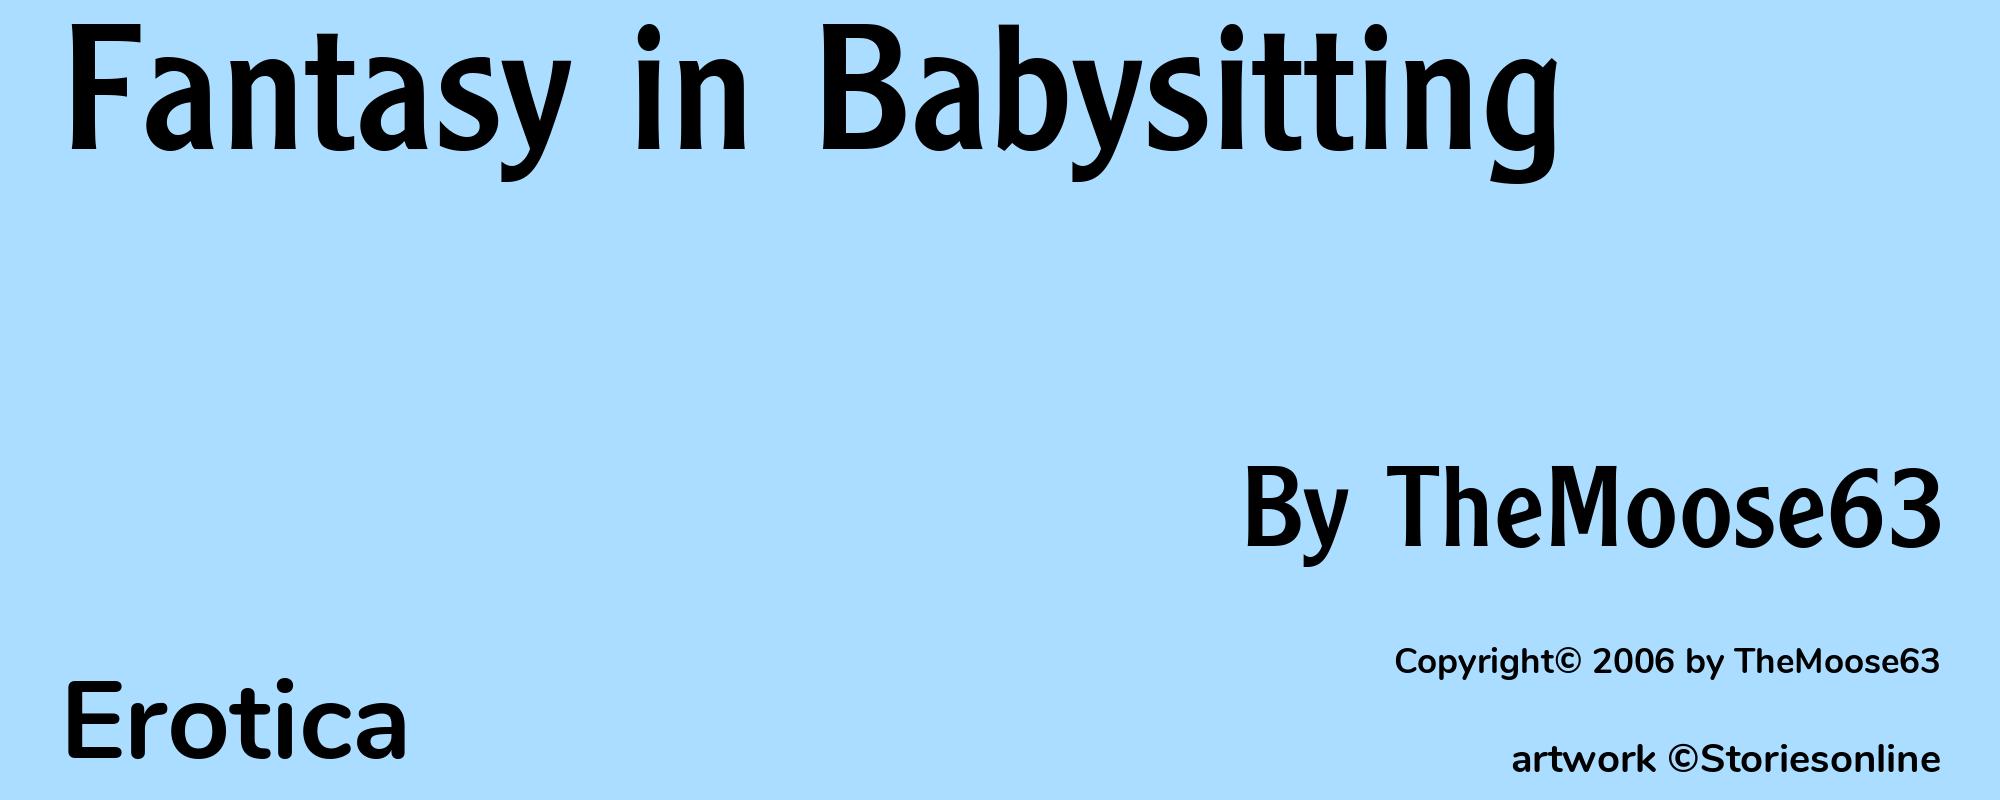 Fantasy in Babysitting - Cover